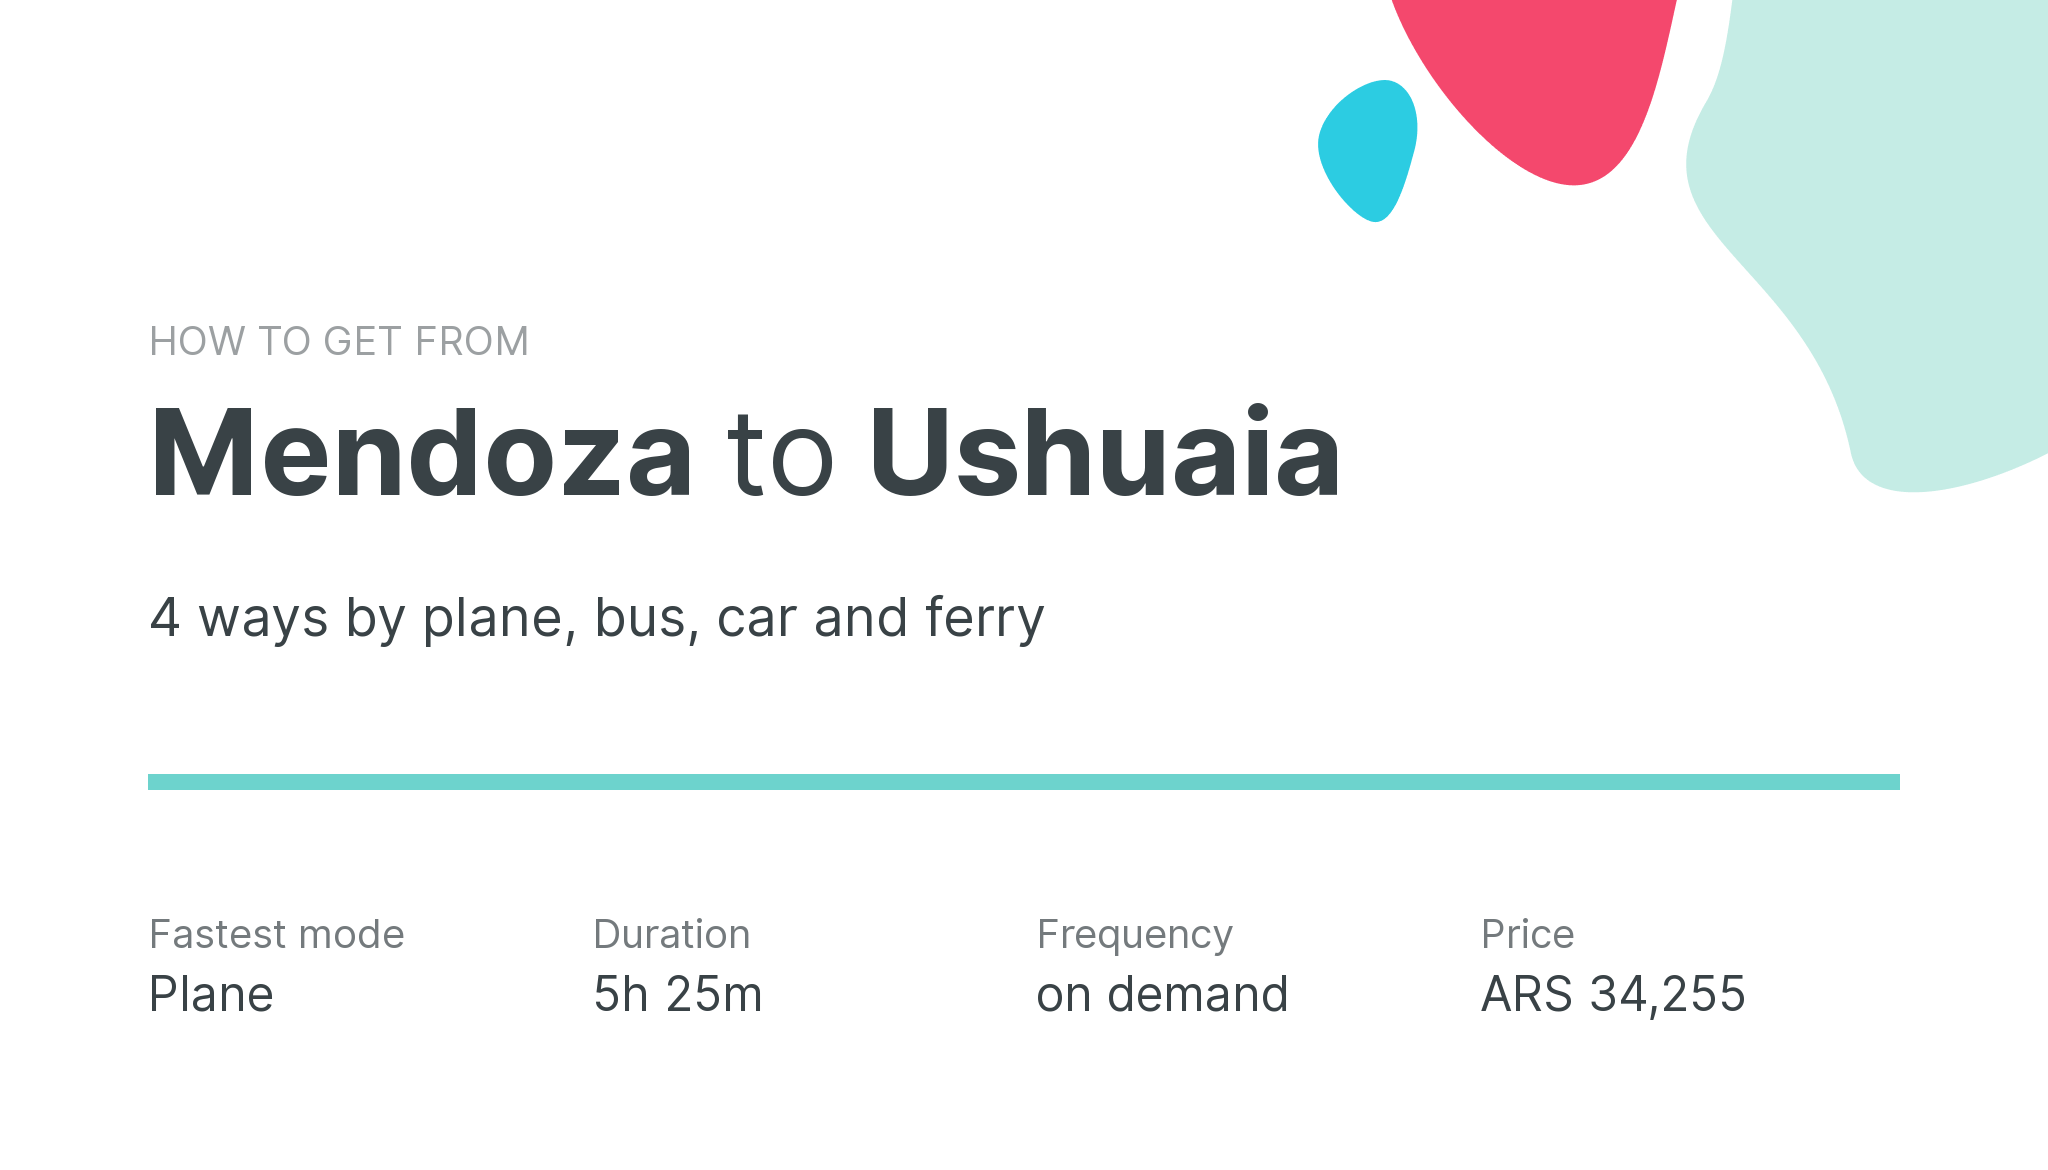 How do I get from Mendoza to Ushuaia